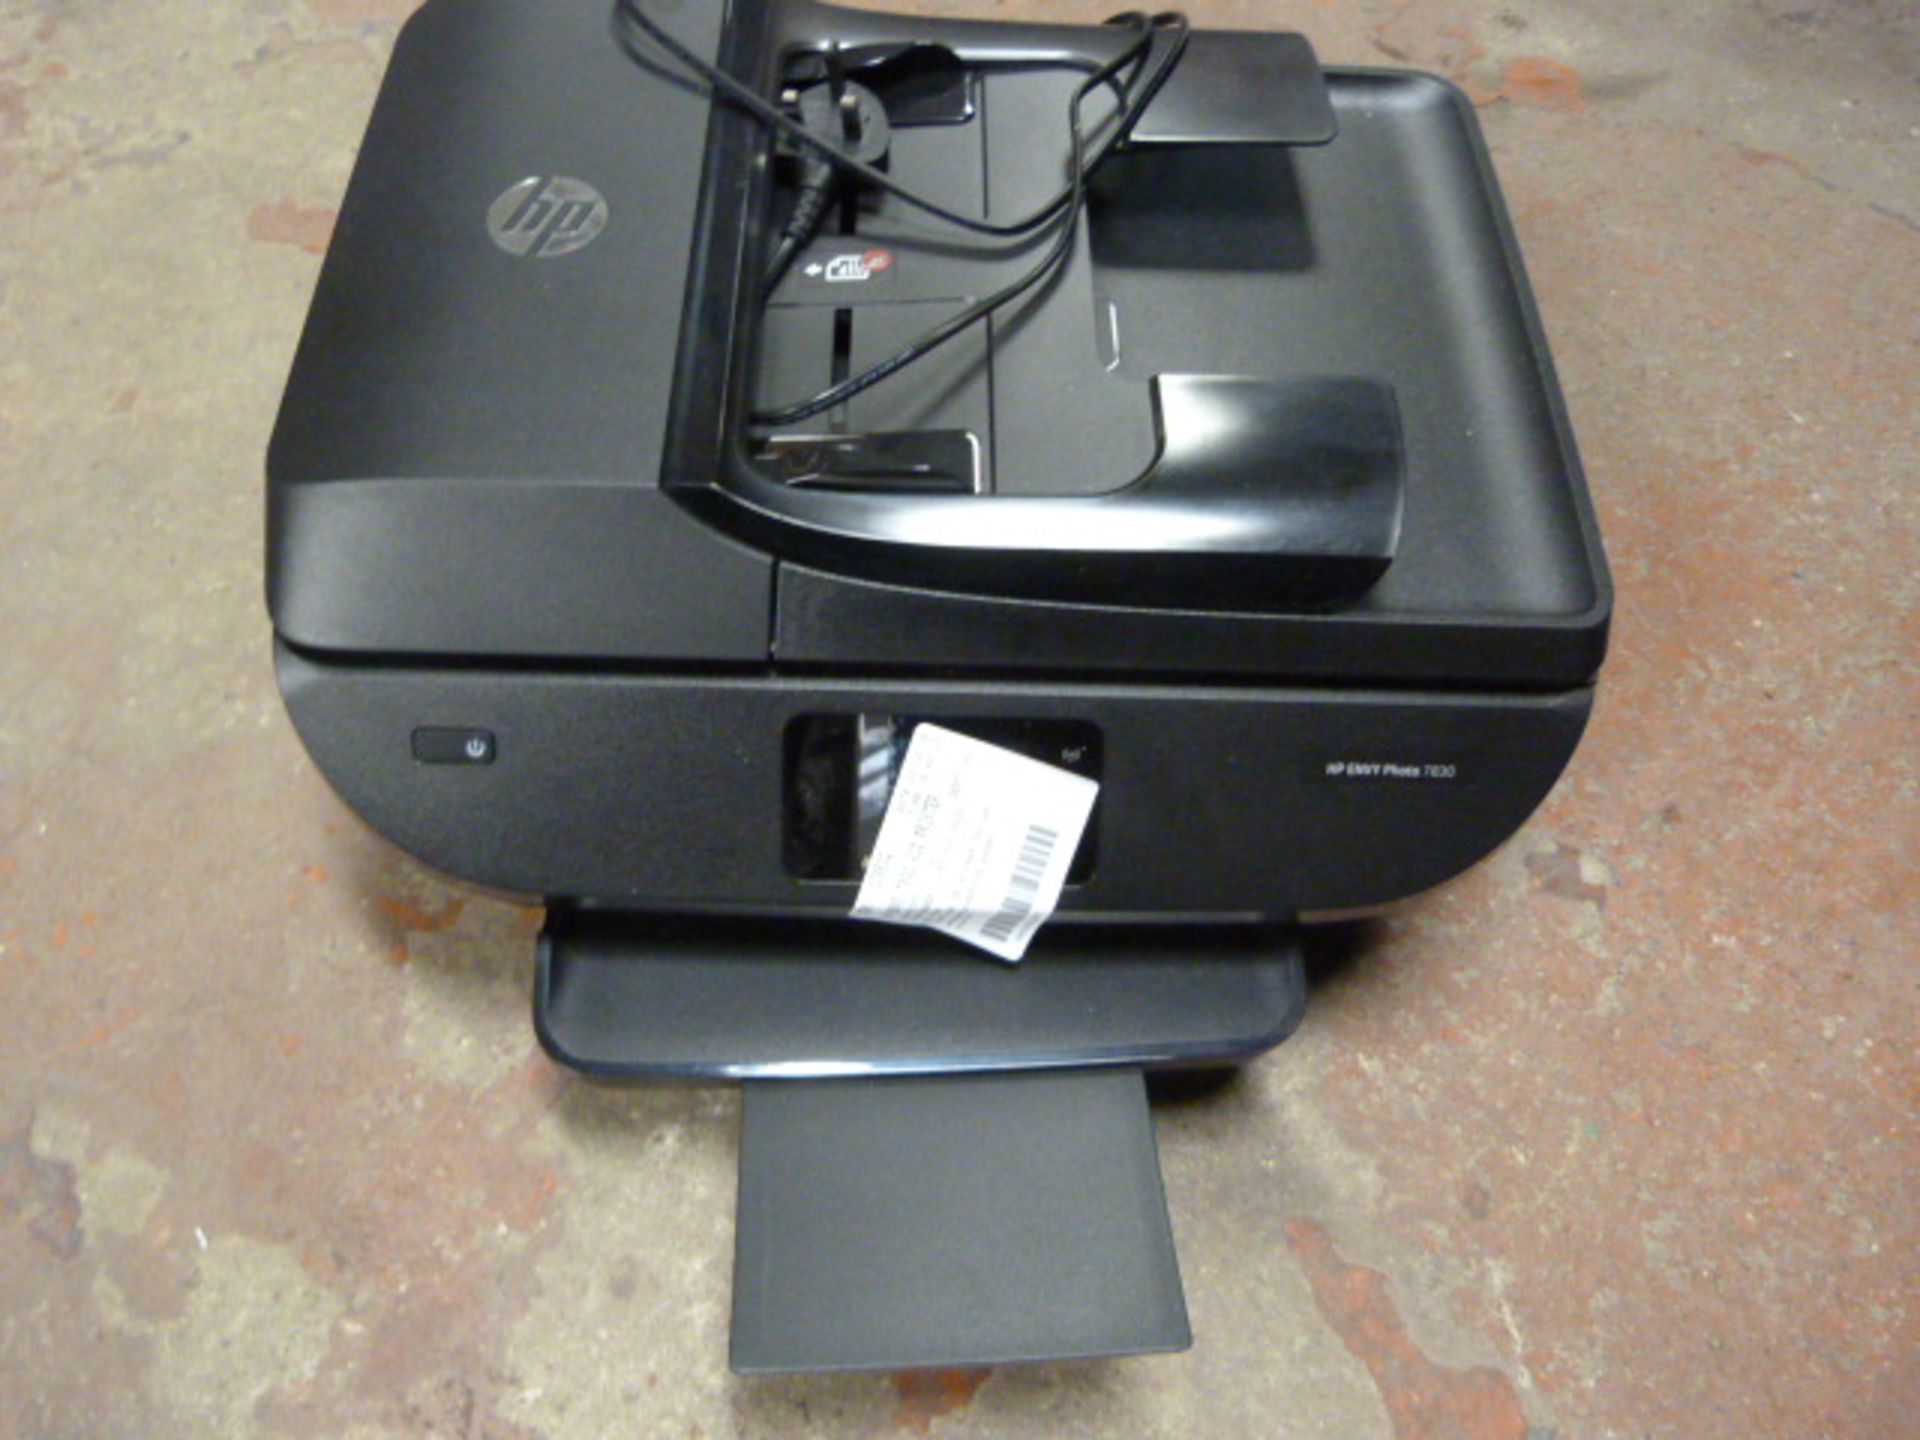 *HP Envy 7830 Aio Printer